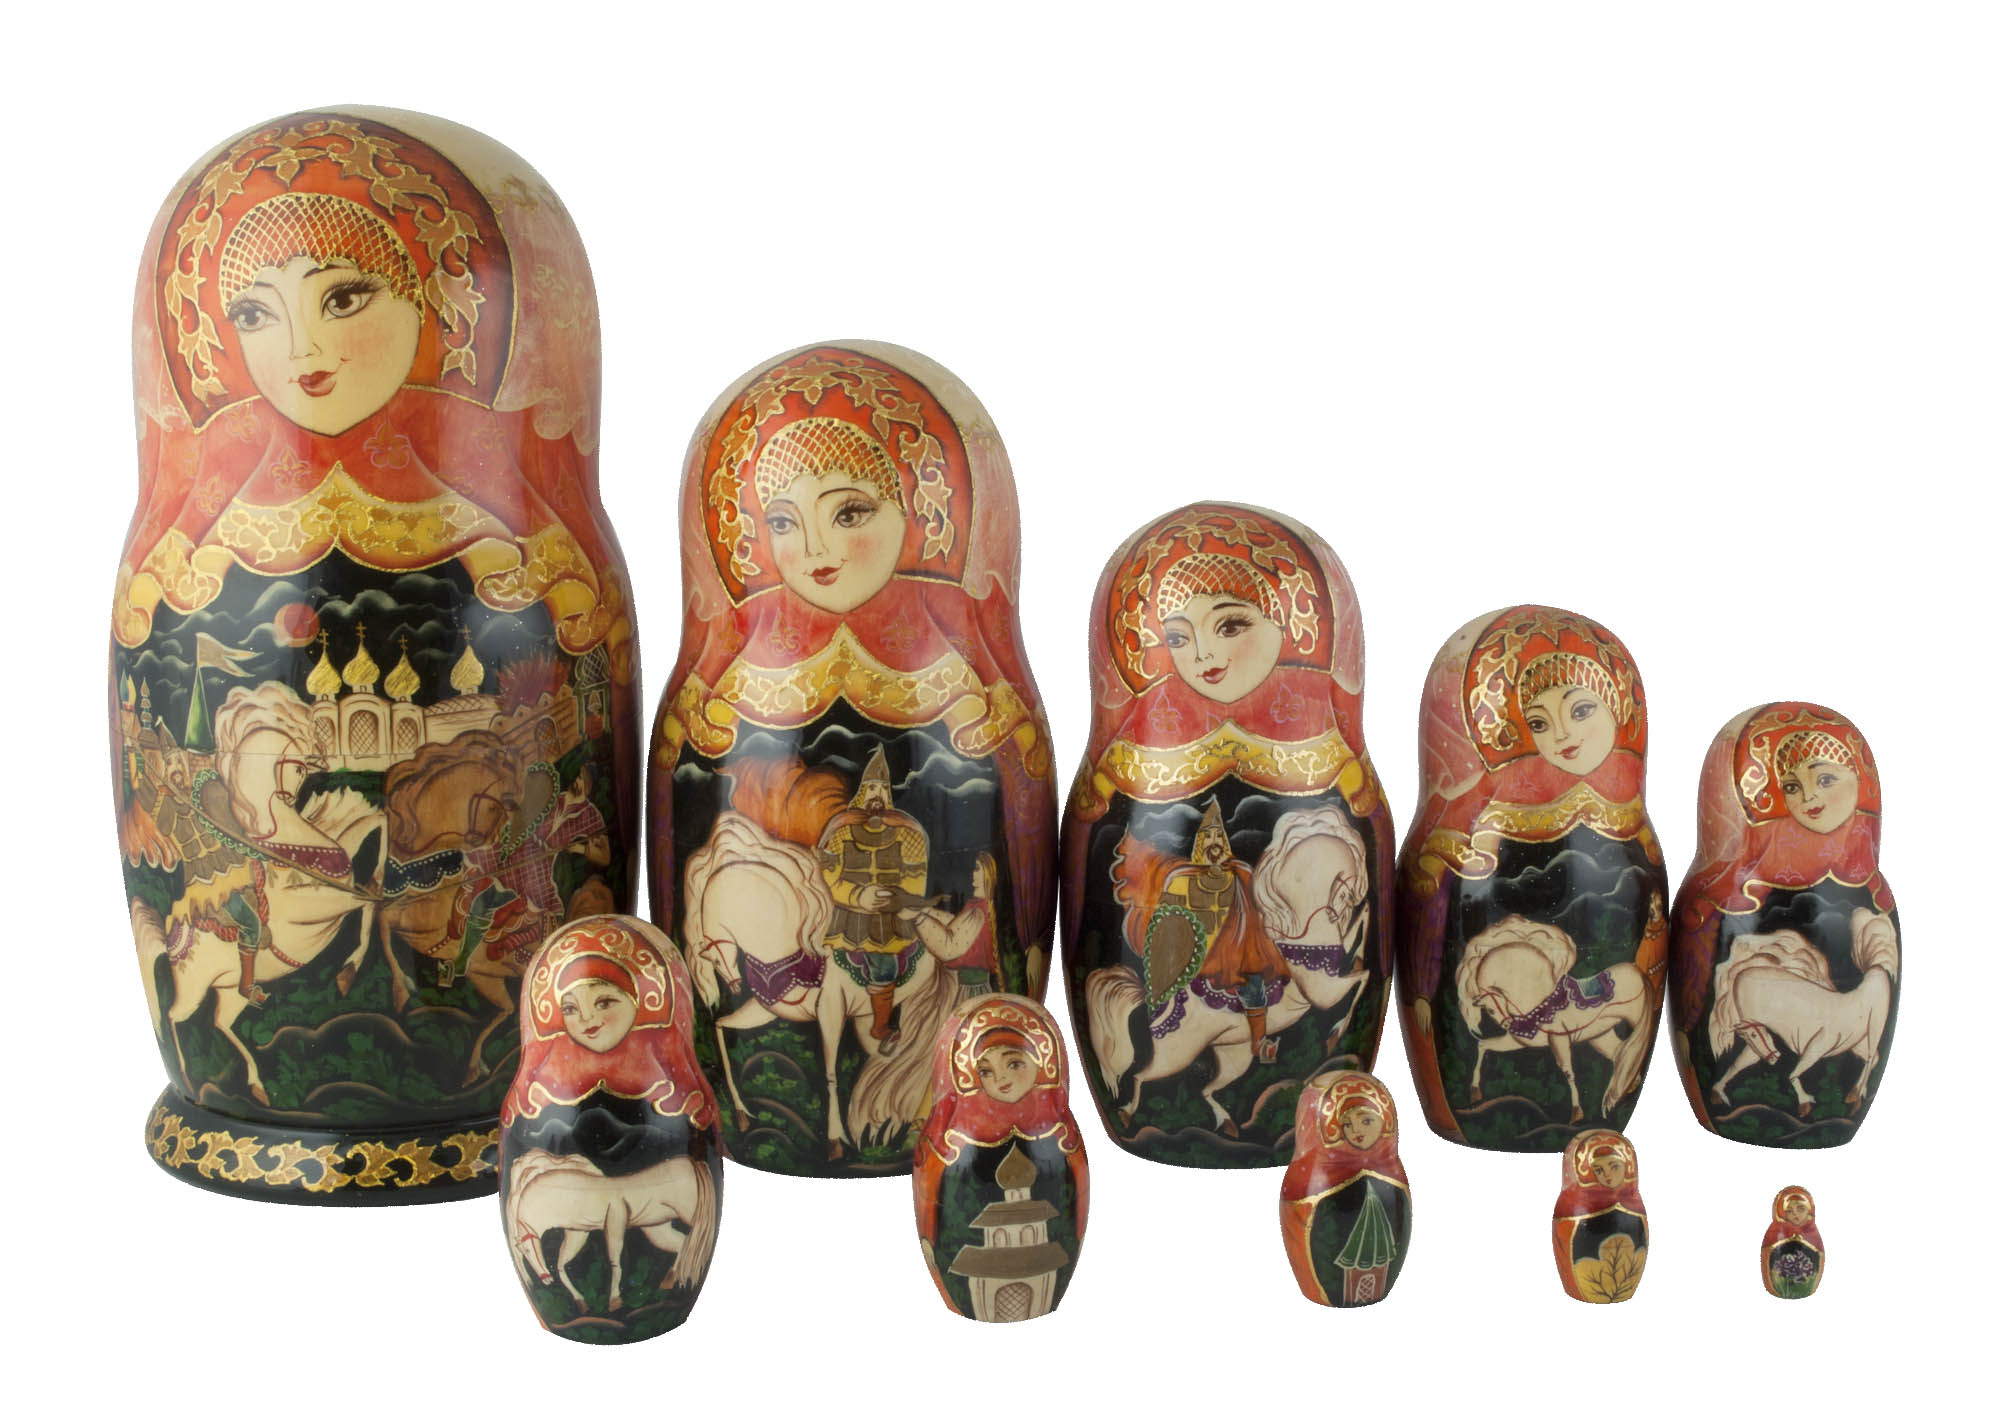 Buy Russian Knights Nesting Doll 10pc./11" at GoldenCockerel.com